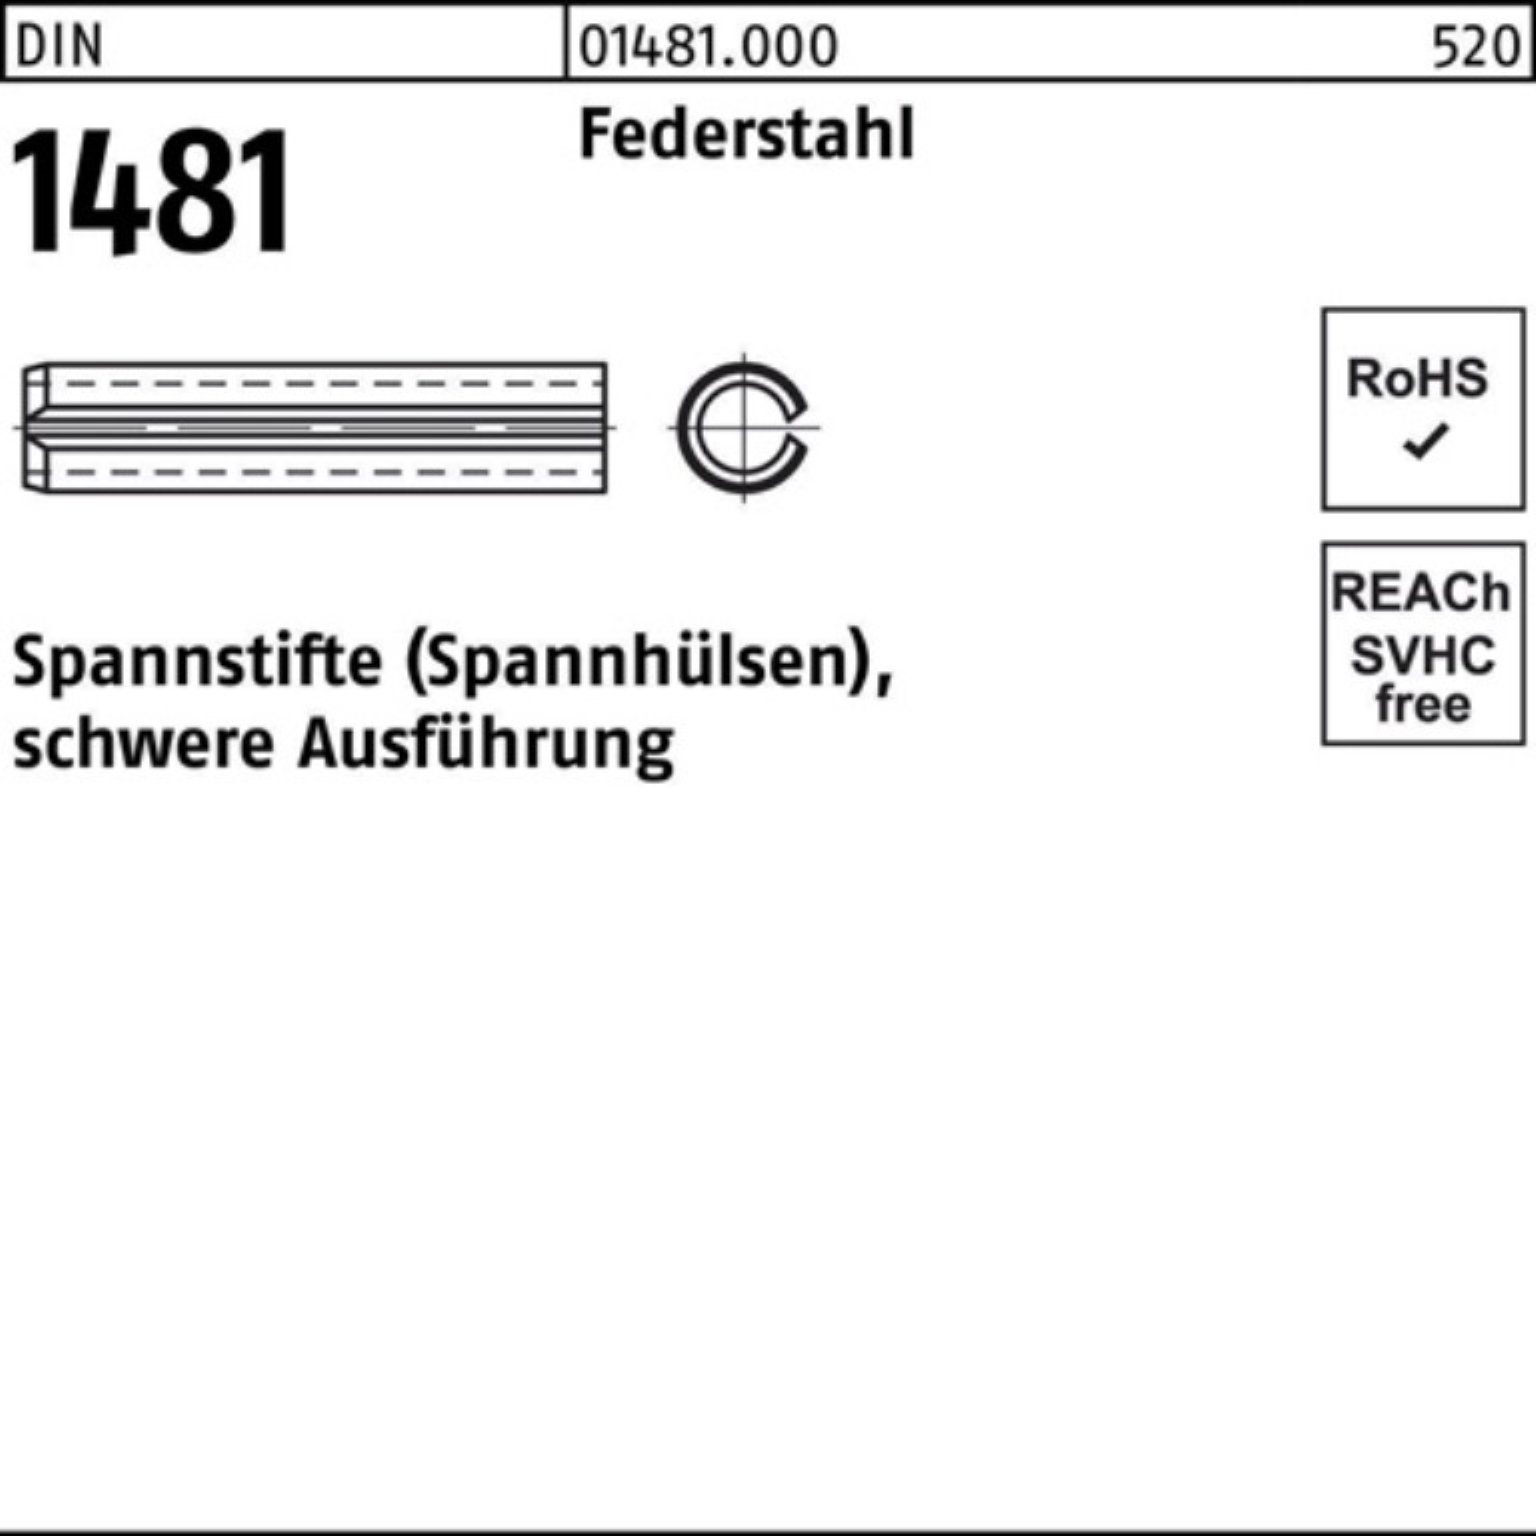 Reyher Spannstift Ausführung Spannstift Pack 22 schwere 1481 Federstahl 100er 2 DIN 16x